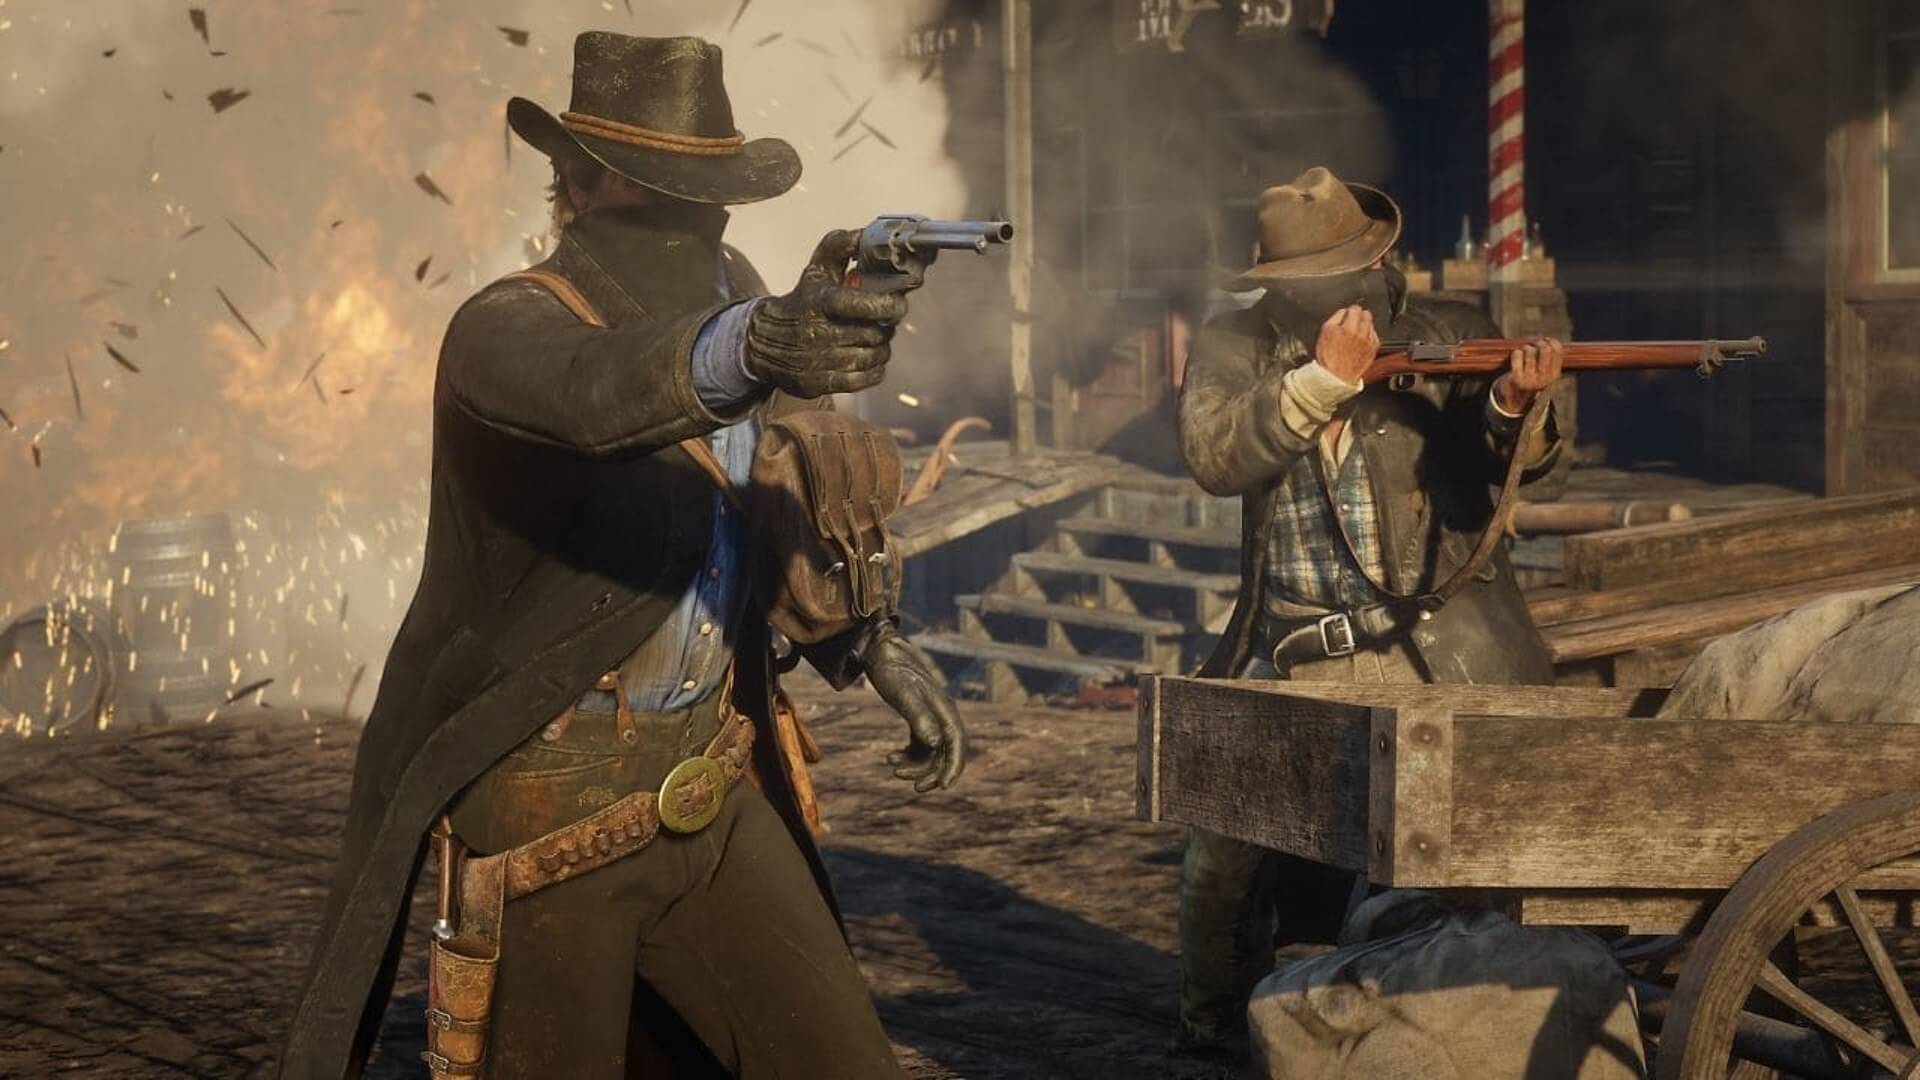 Brink krigerisk emne Red Dead Redemption 2 comes to PC on November 5 | TechSpot